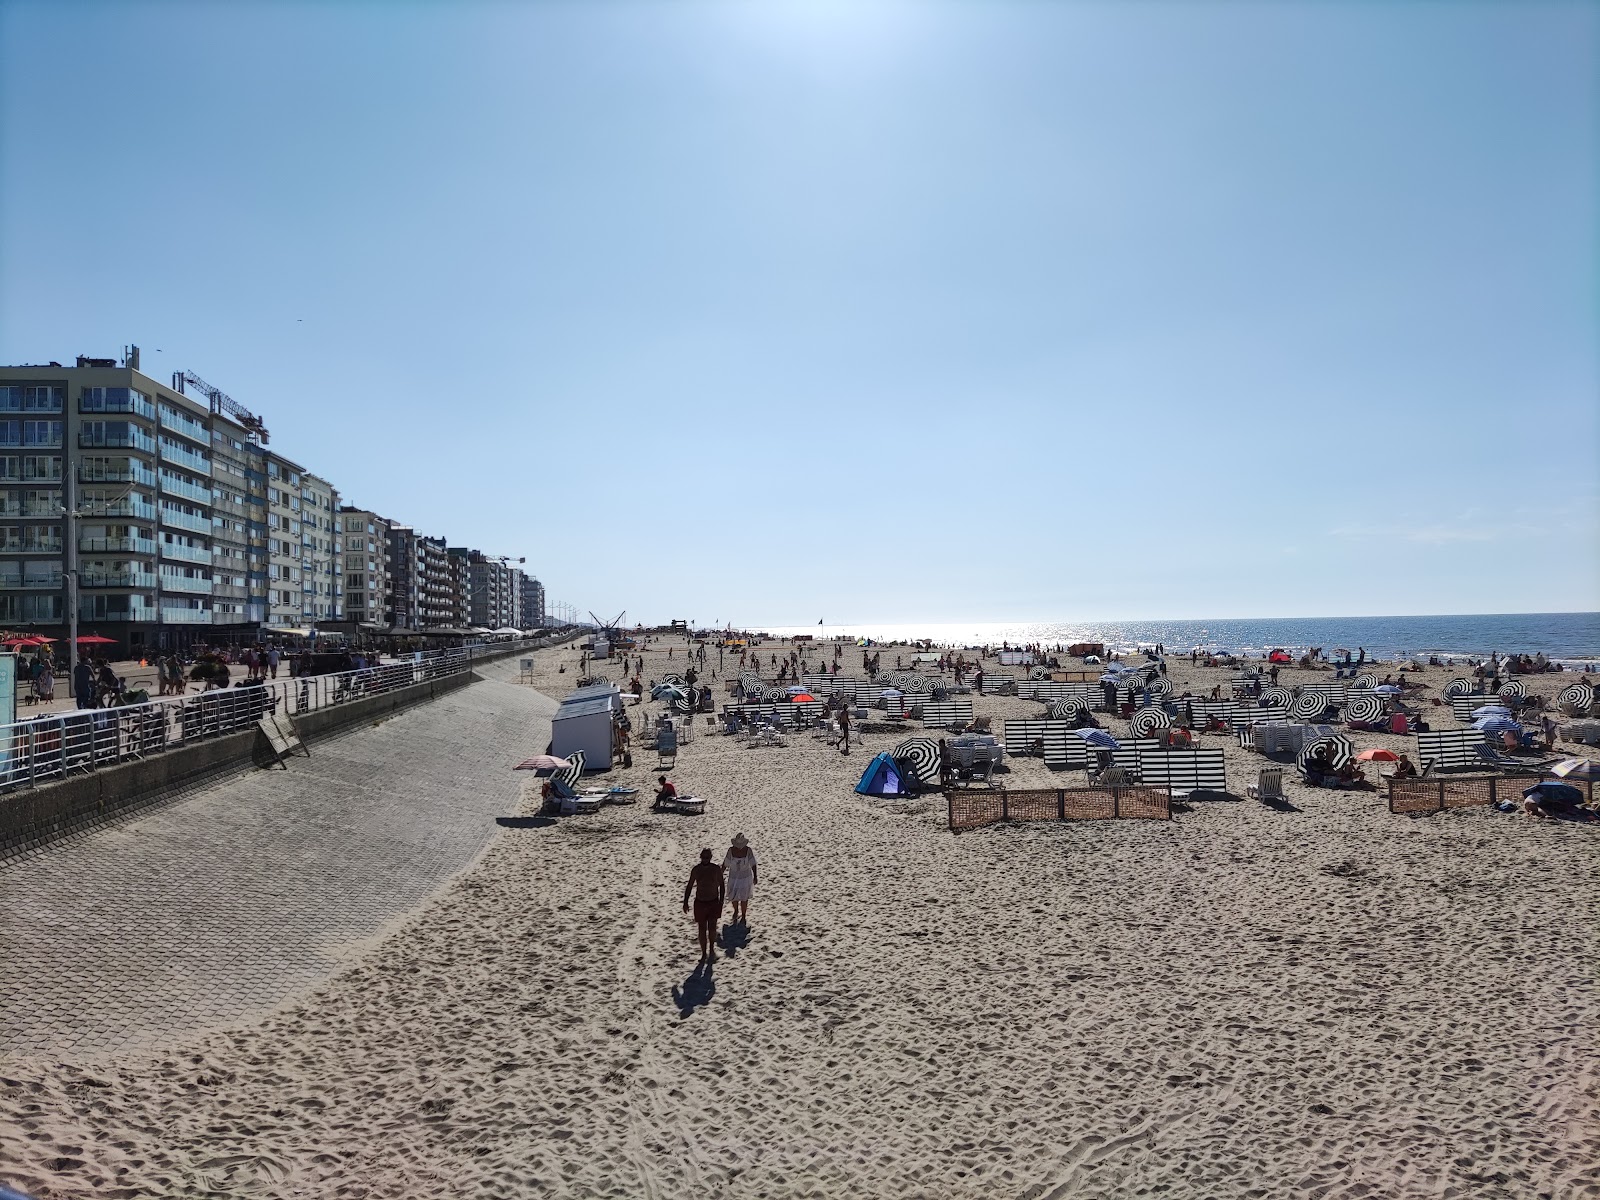 Foto av De Panne Strand med ljus sand yta